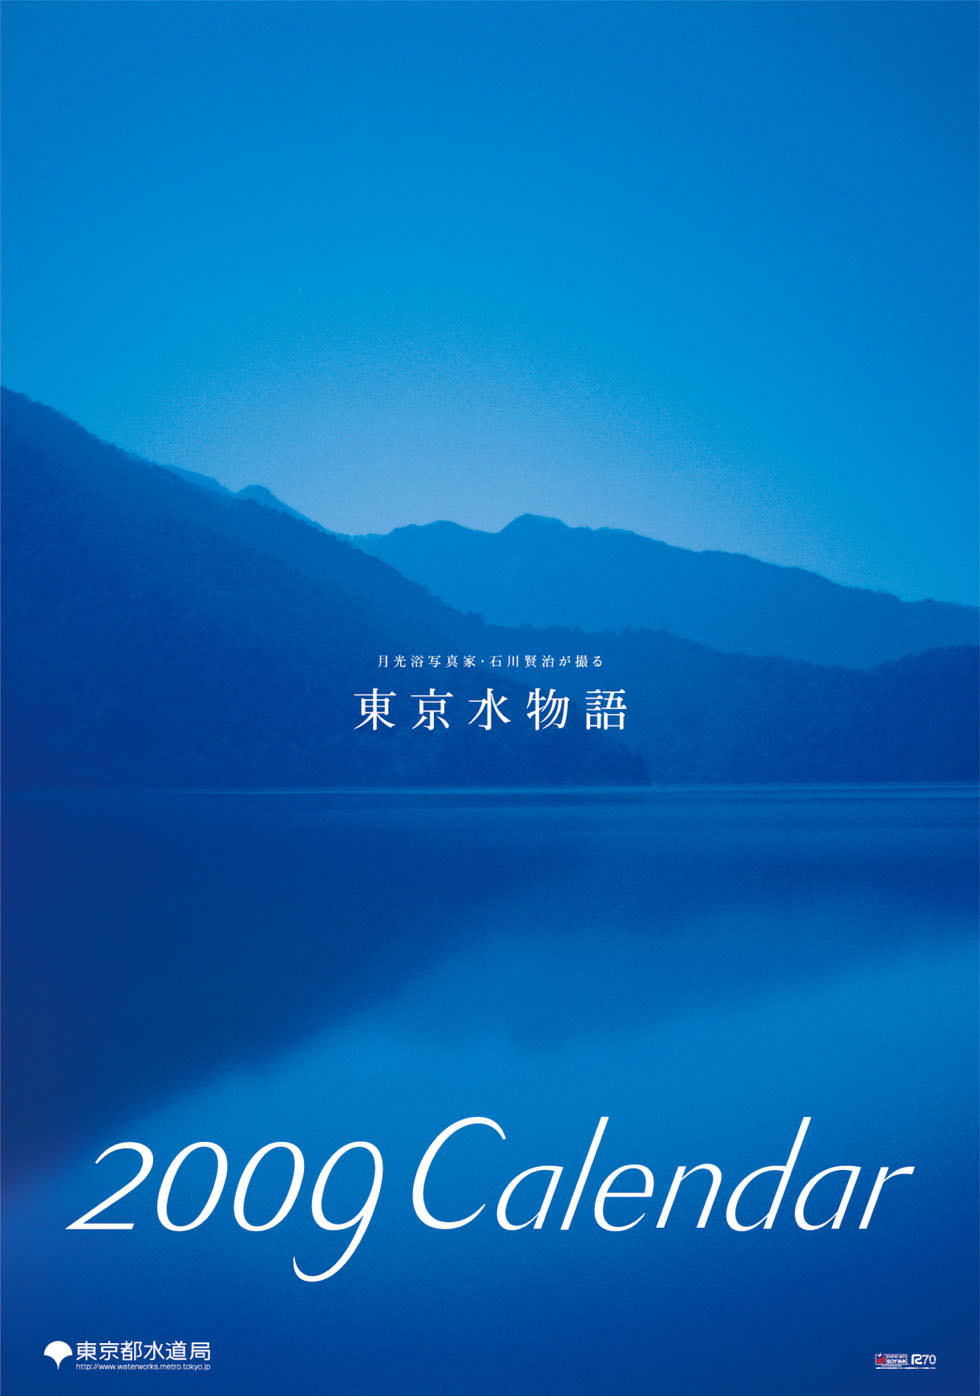 東京都水道局カレンダー画像